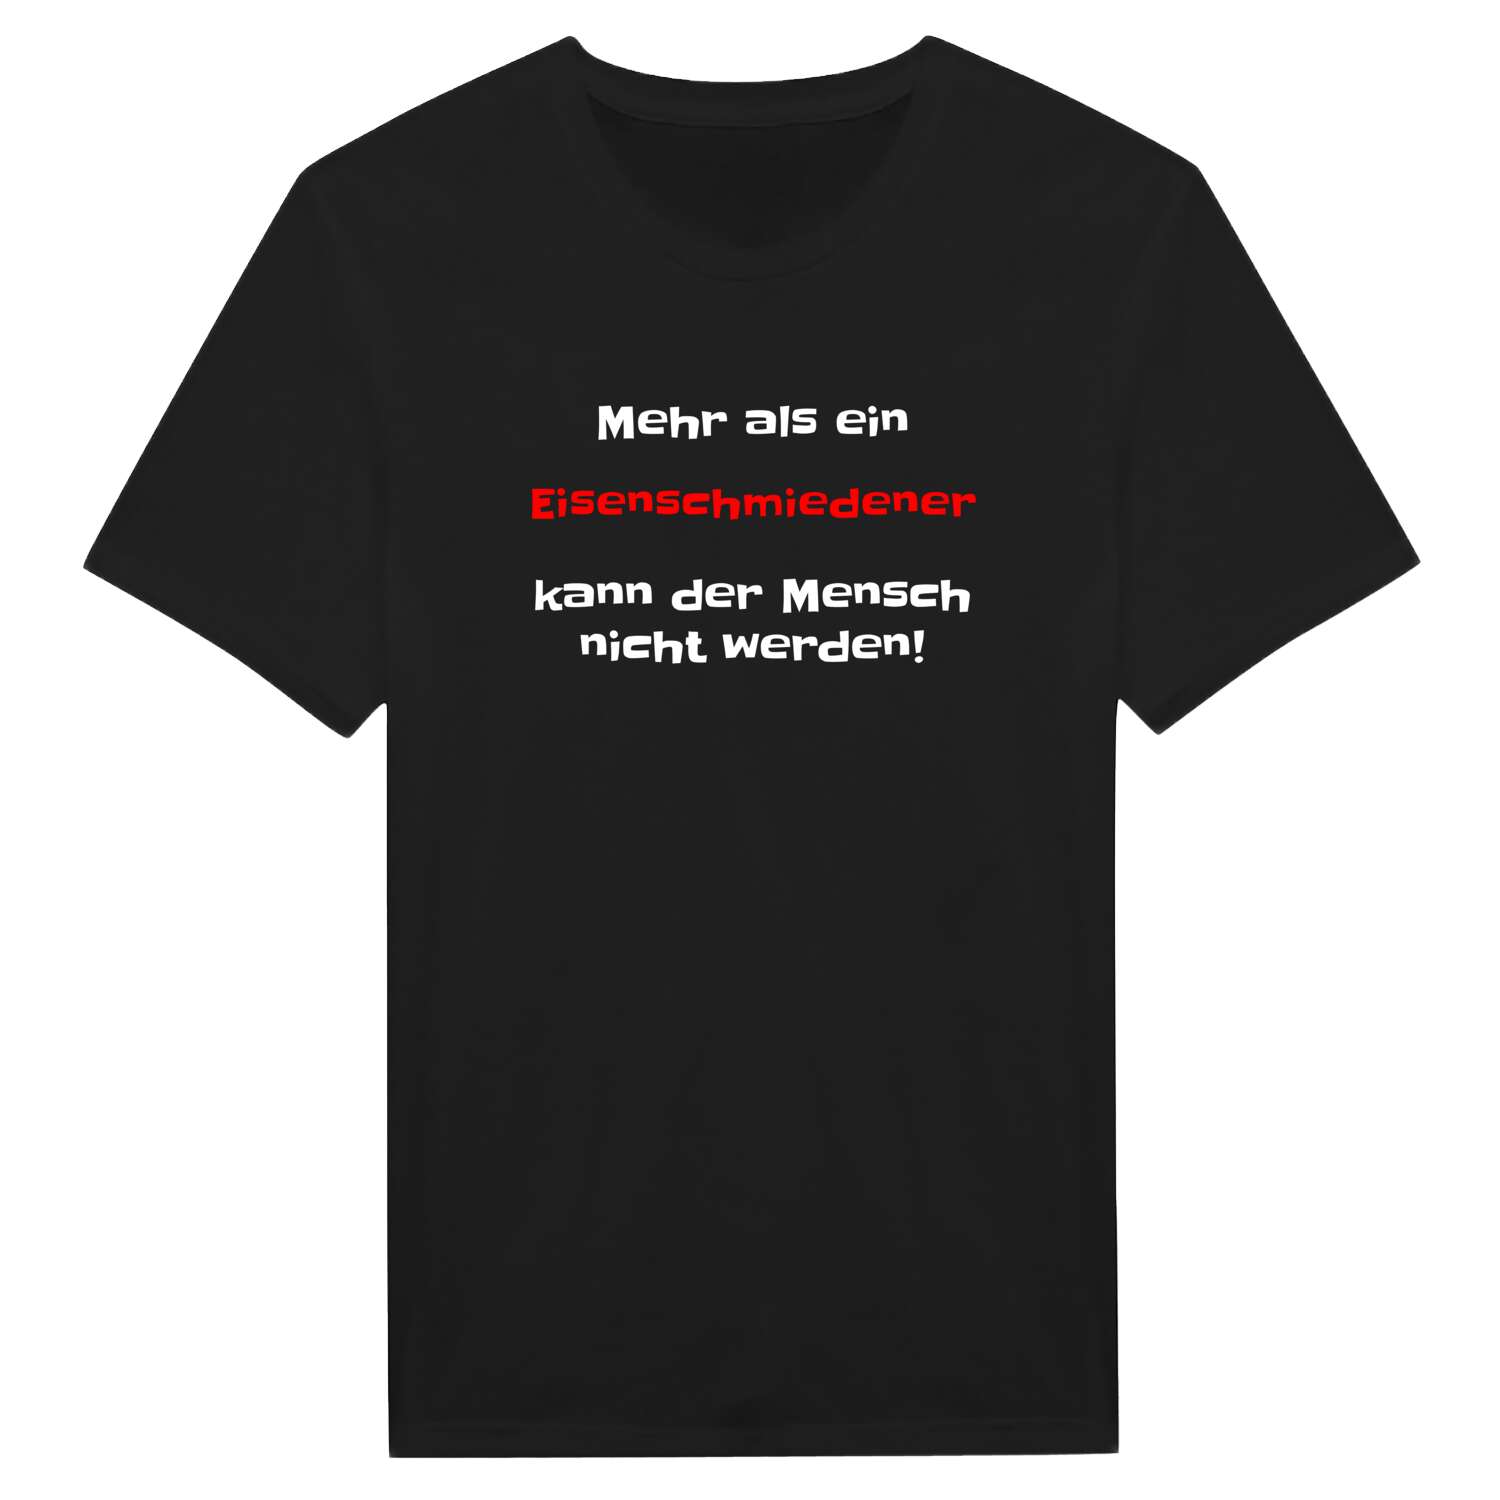 Eisenschmiede T-Shirt »Mehr als ein«